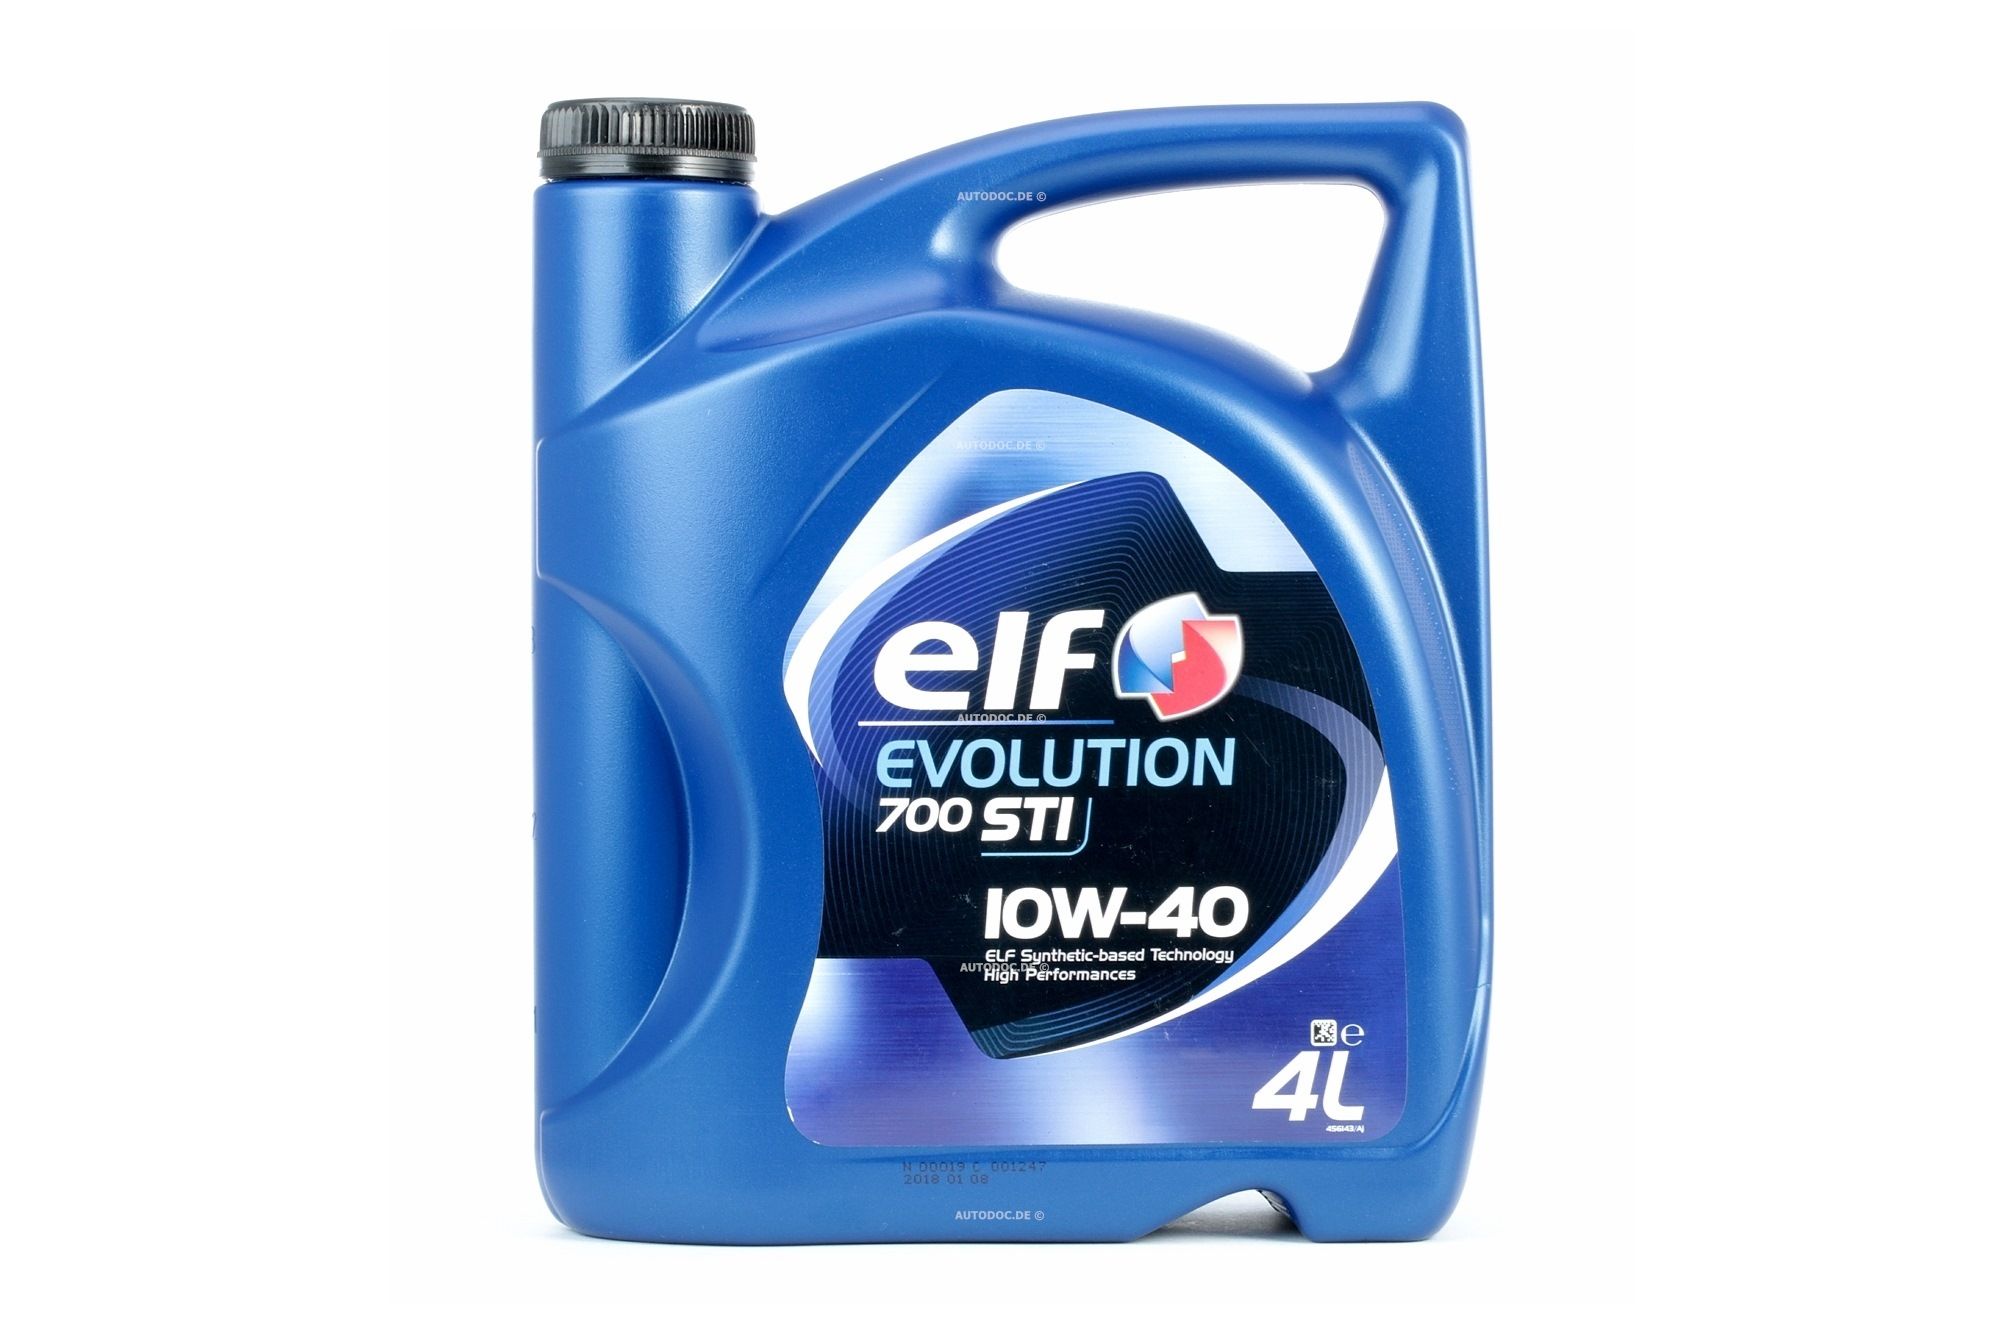 ELF Evolution, 700 STI 2202841 Moottoriöljy 10W-40, 4l, Osasynteettinen öljy